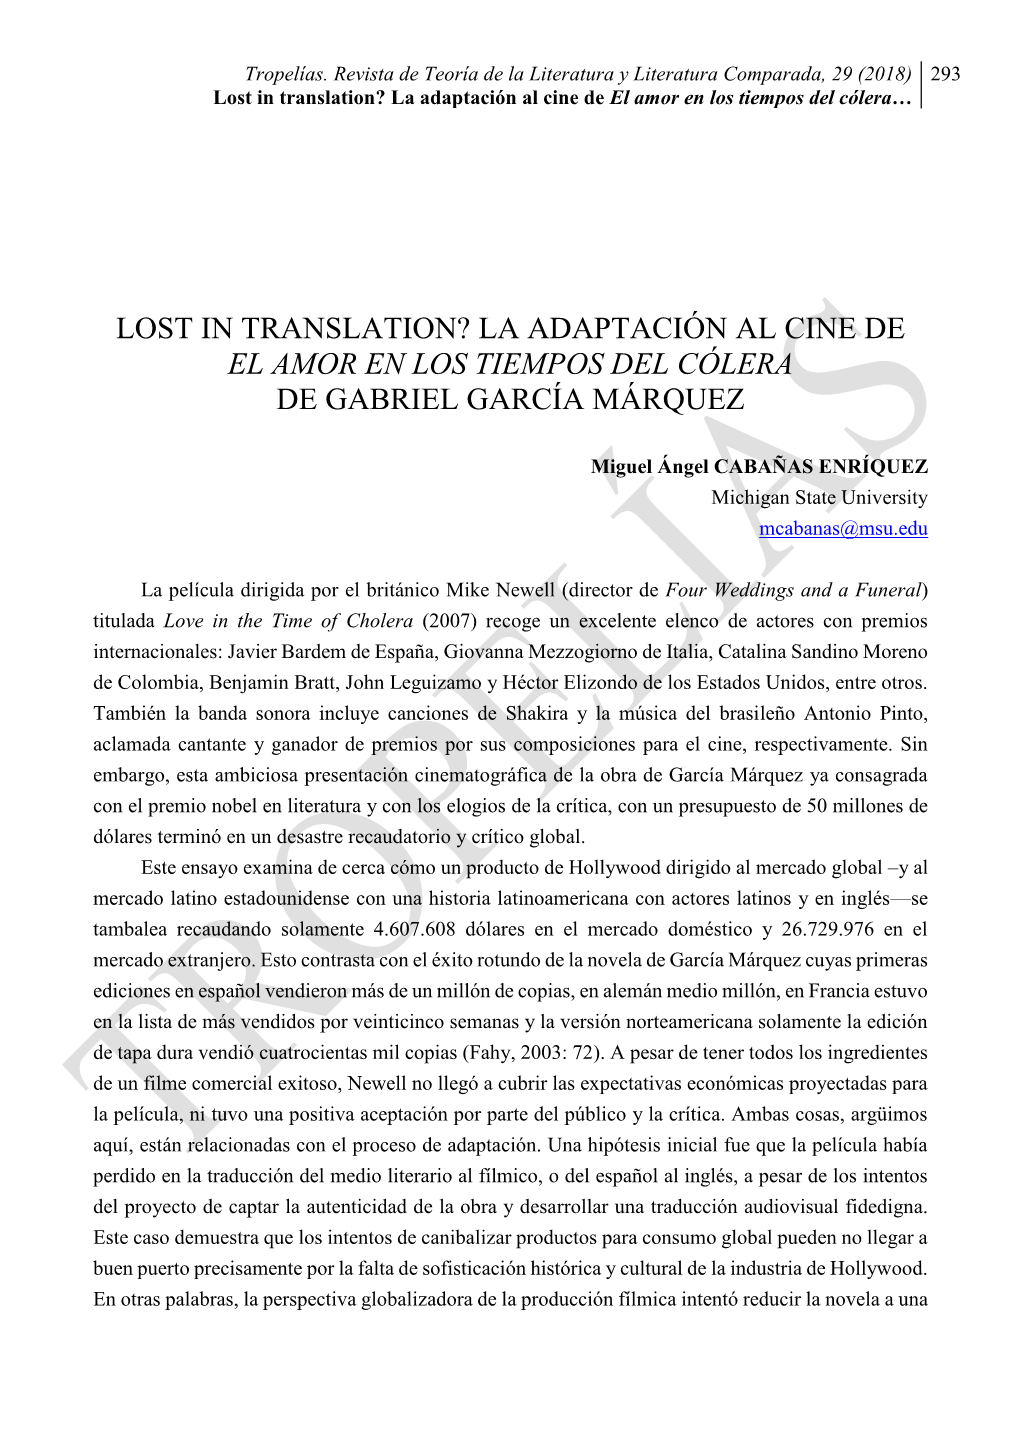 Lost in Translation? La Adaptación Al Cine De El Amor En Los Tiempos Del Cólera De Gabriel García Márquez